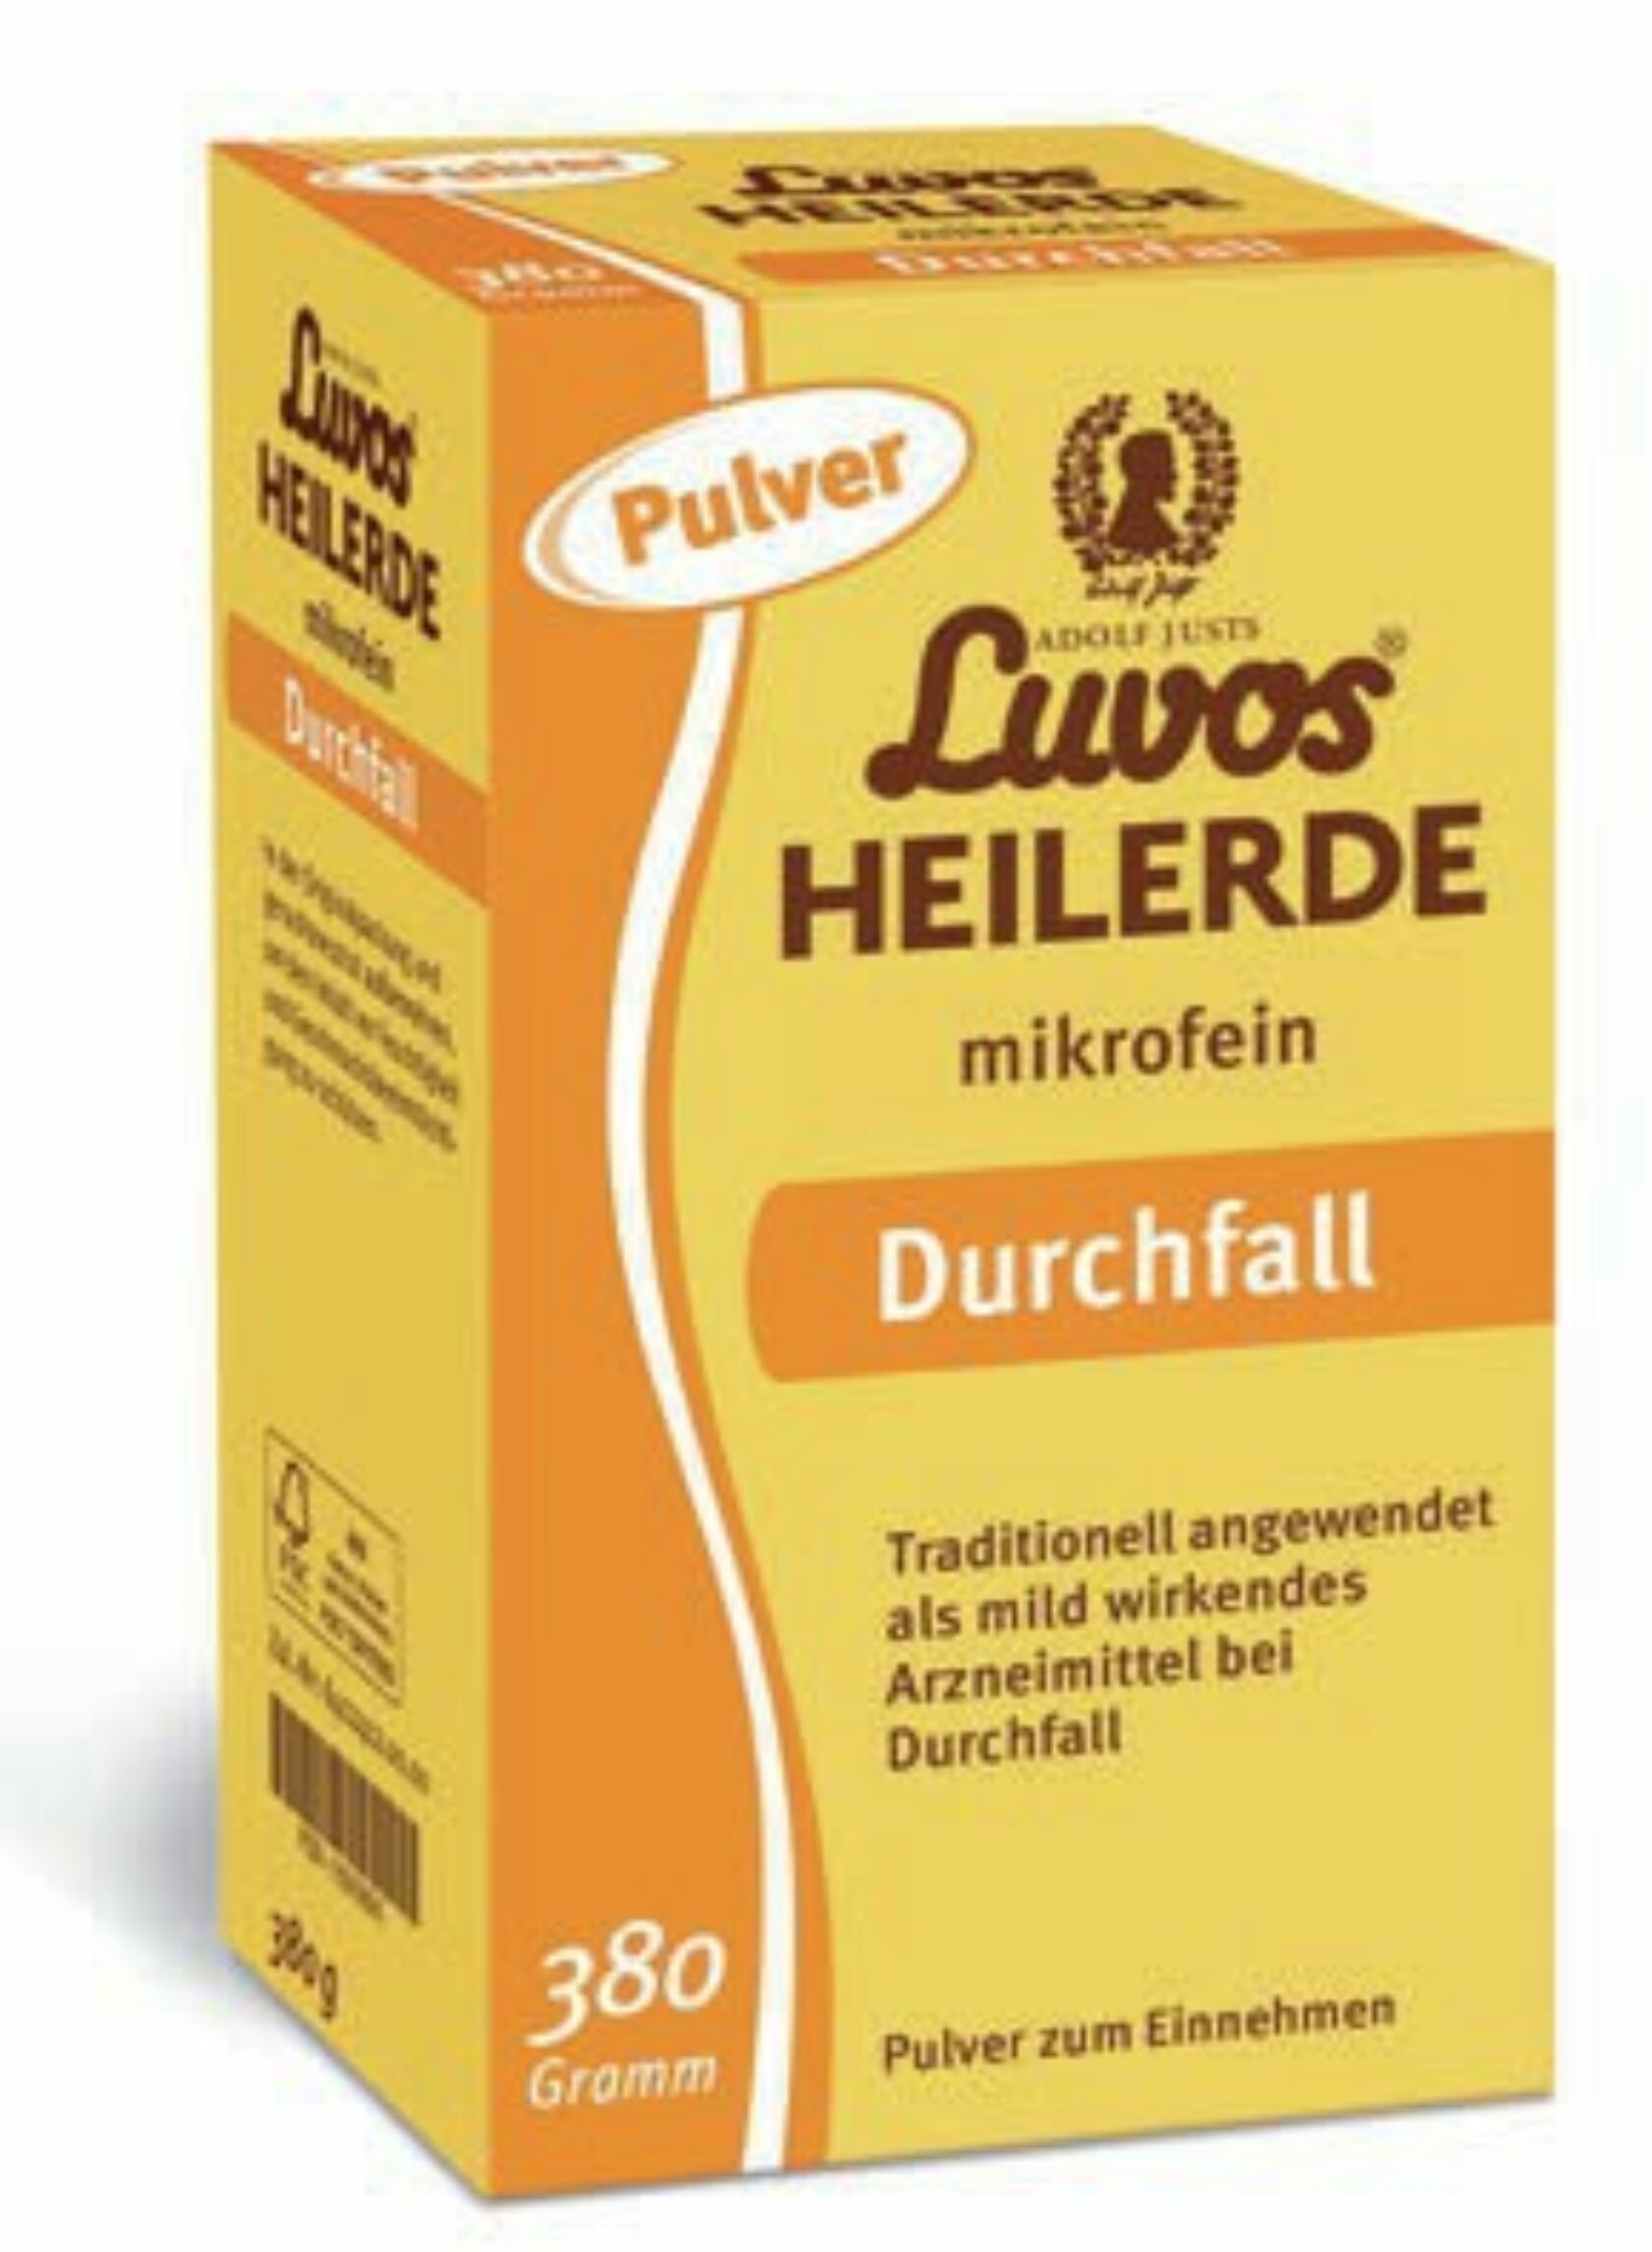 Verkaufsverpackung von Luvos Heilerde mikrofein bei Durchfall.